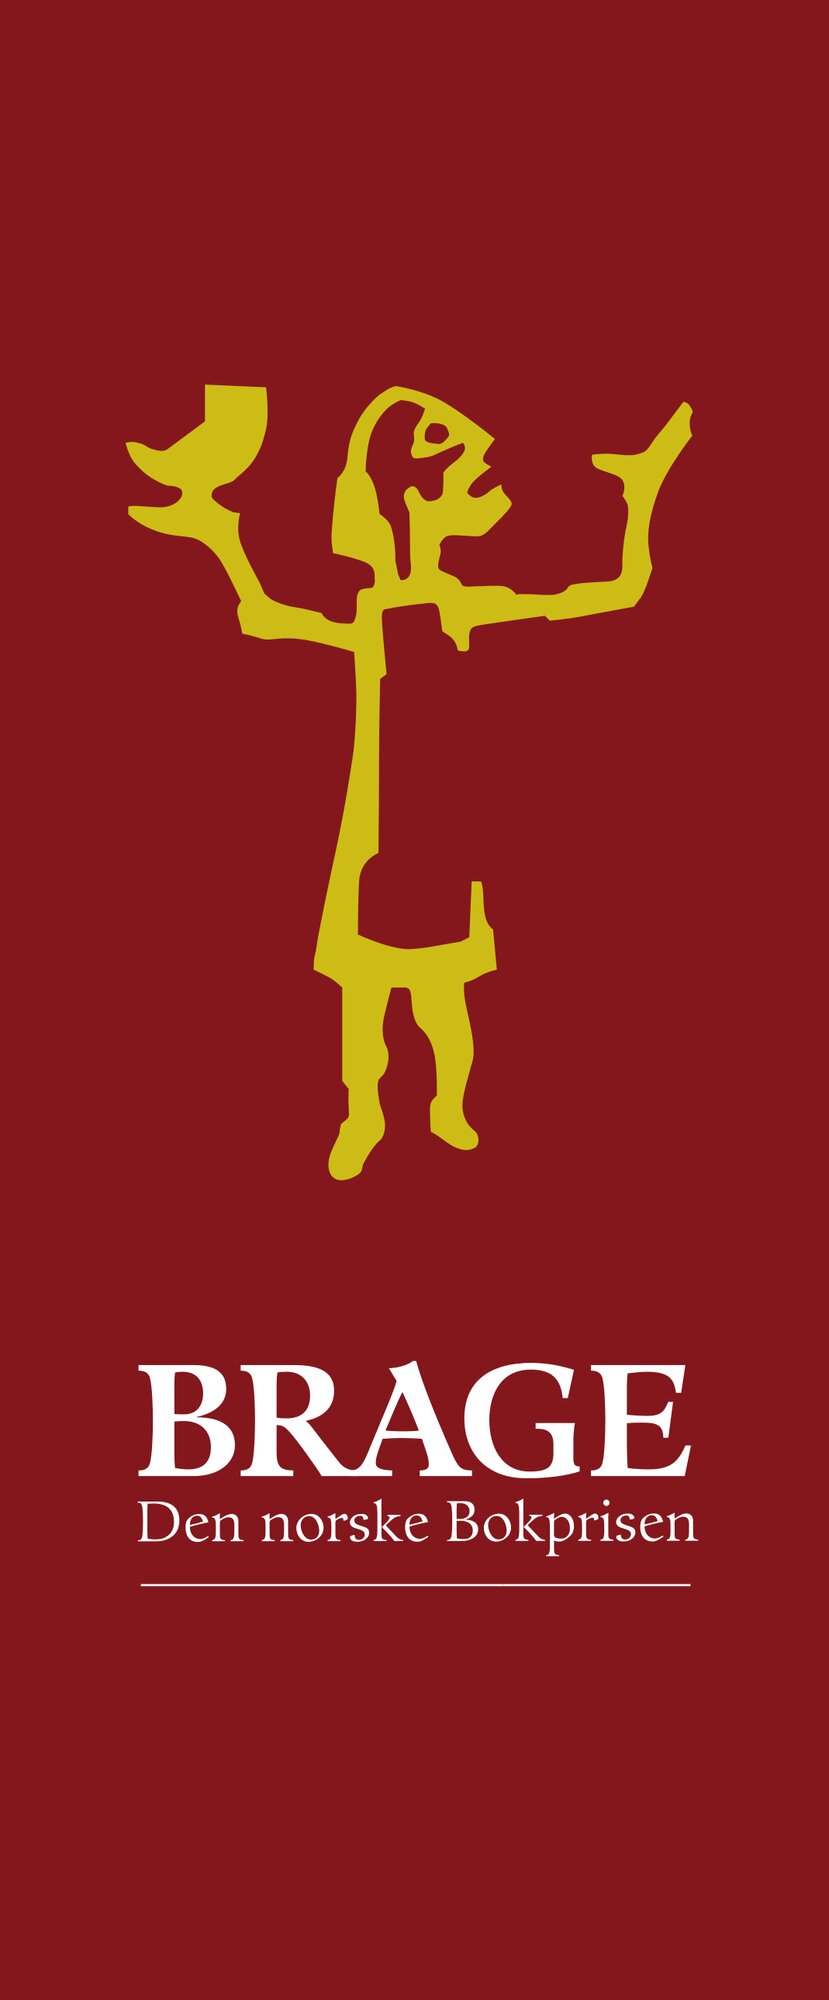 Brageprisen logo helfigur